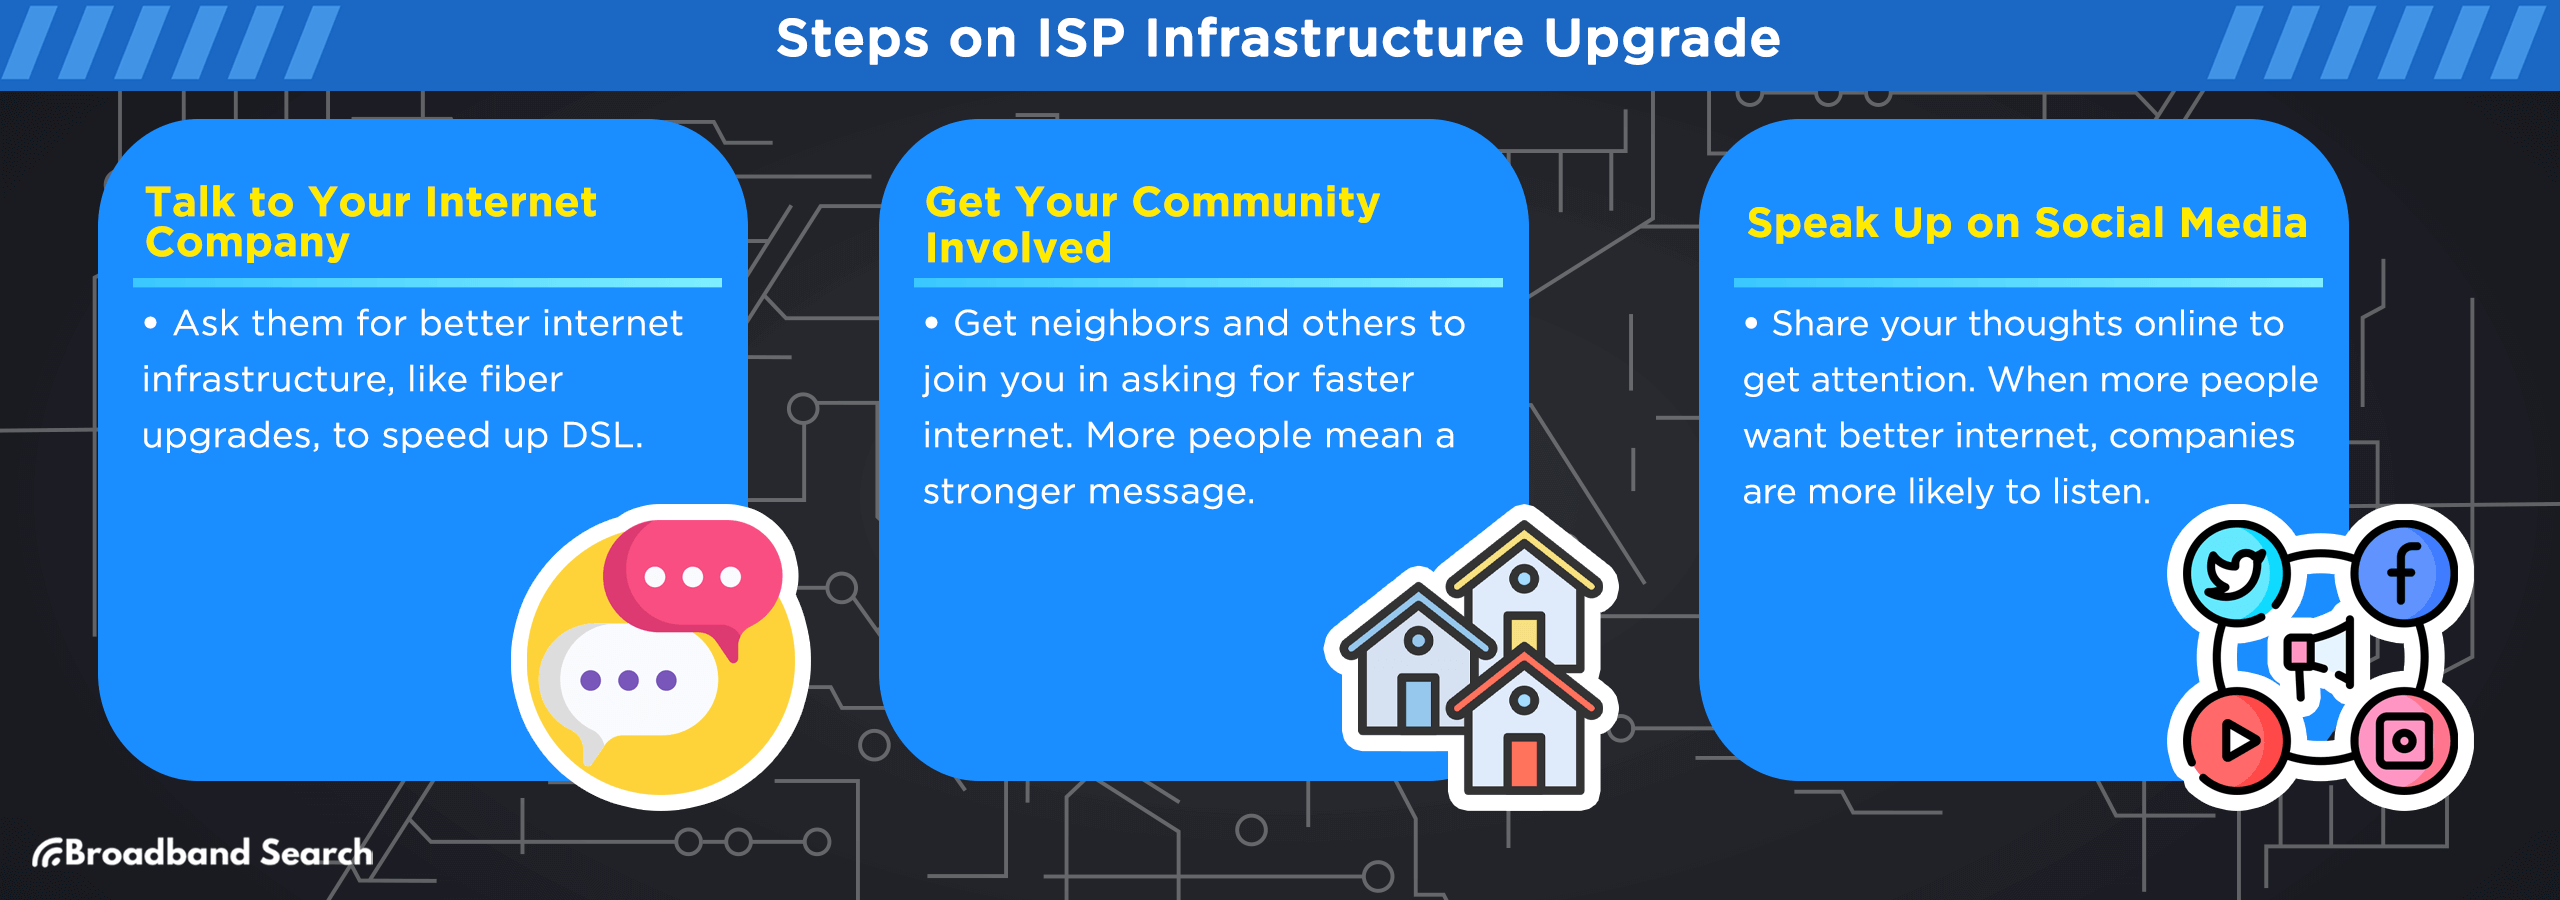 Steps on ISP infrastructure upgrade